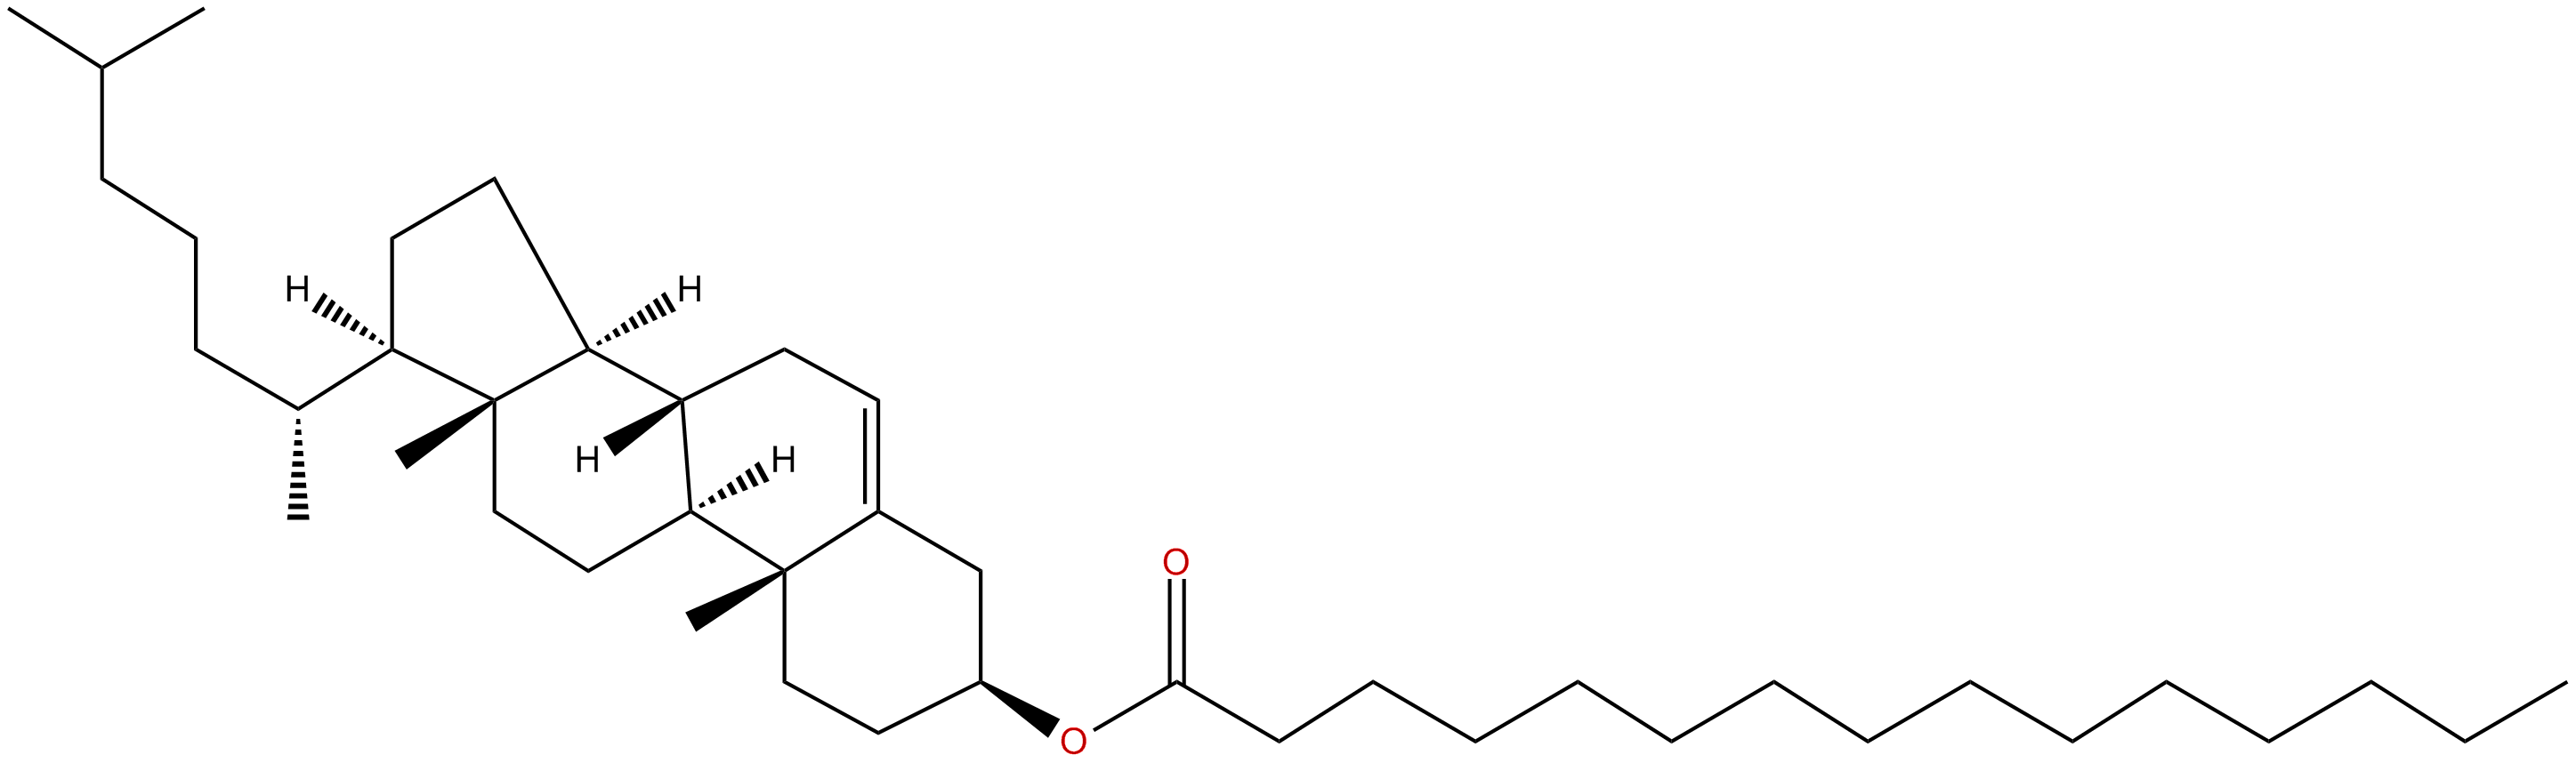 Image of (3.beta.)-cholest-5-en-3-yl pentadecanoate